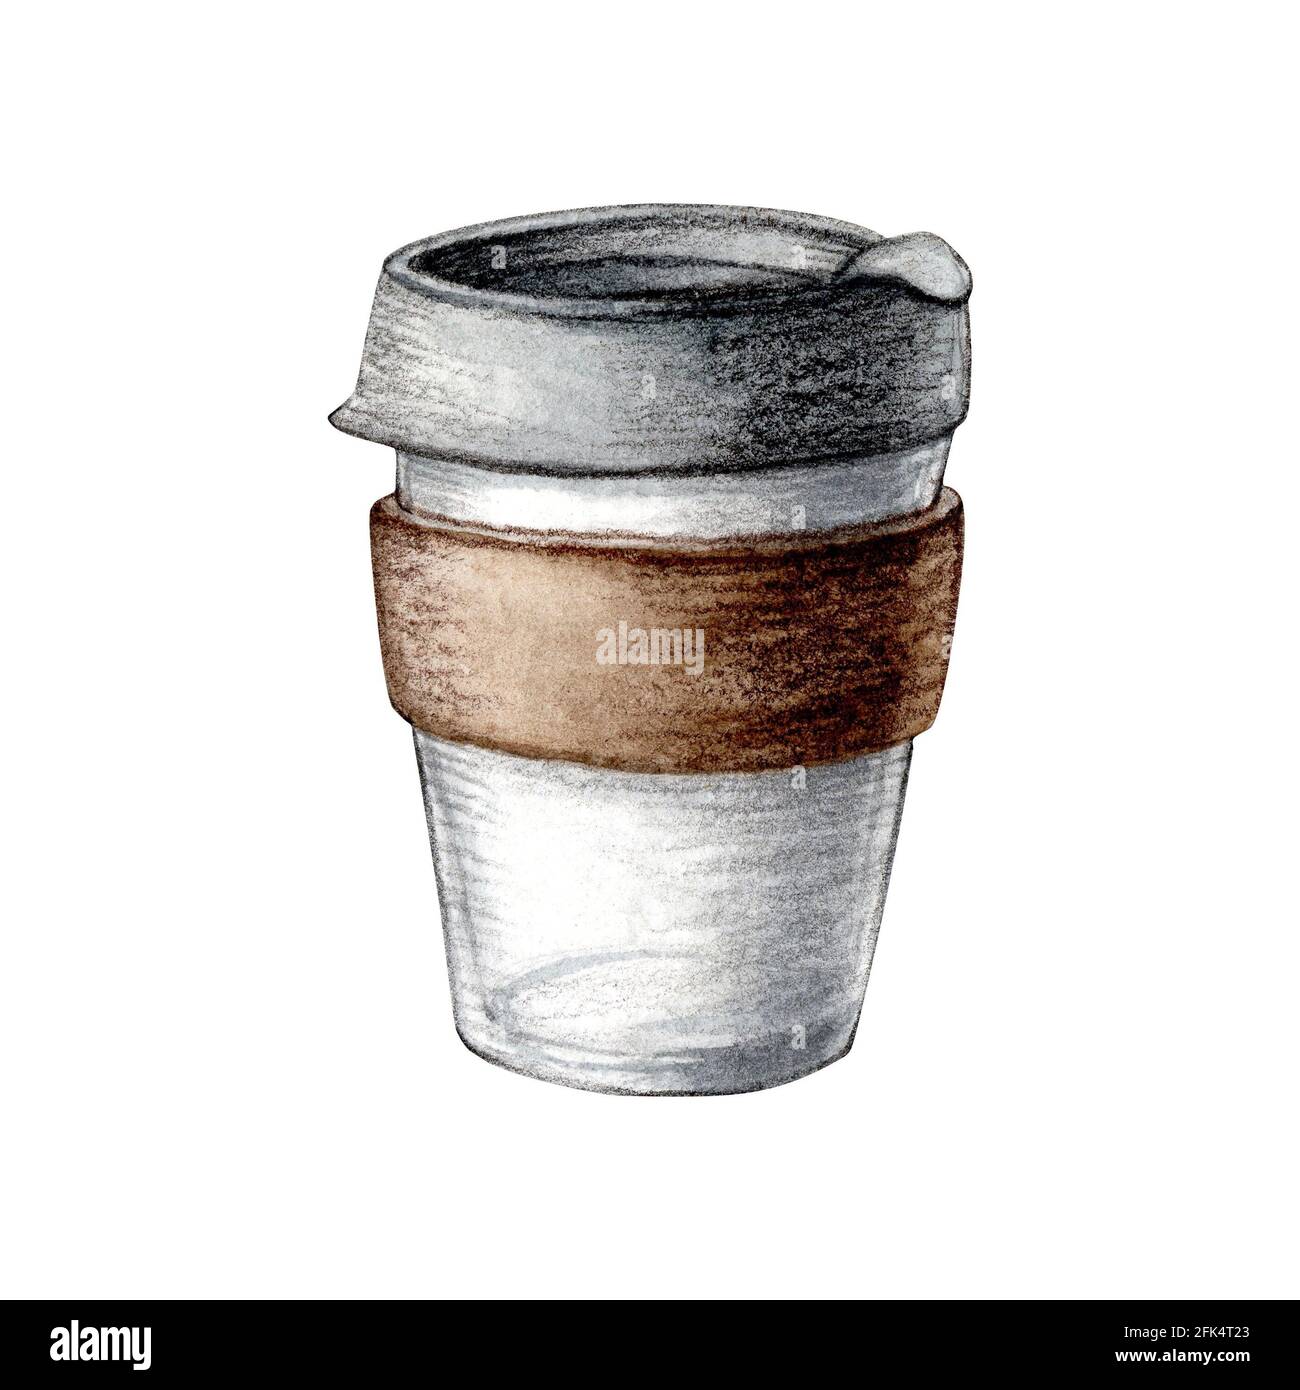 Aquarelle illustration verre zéro déchet tasse à café isolée sur fond blanc. Dessin écologique. Peinture de haute qualité Banque D'Images